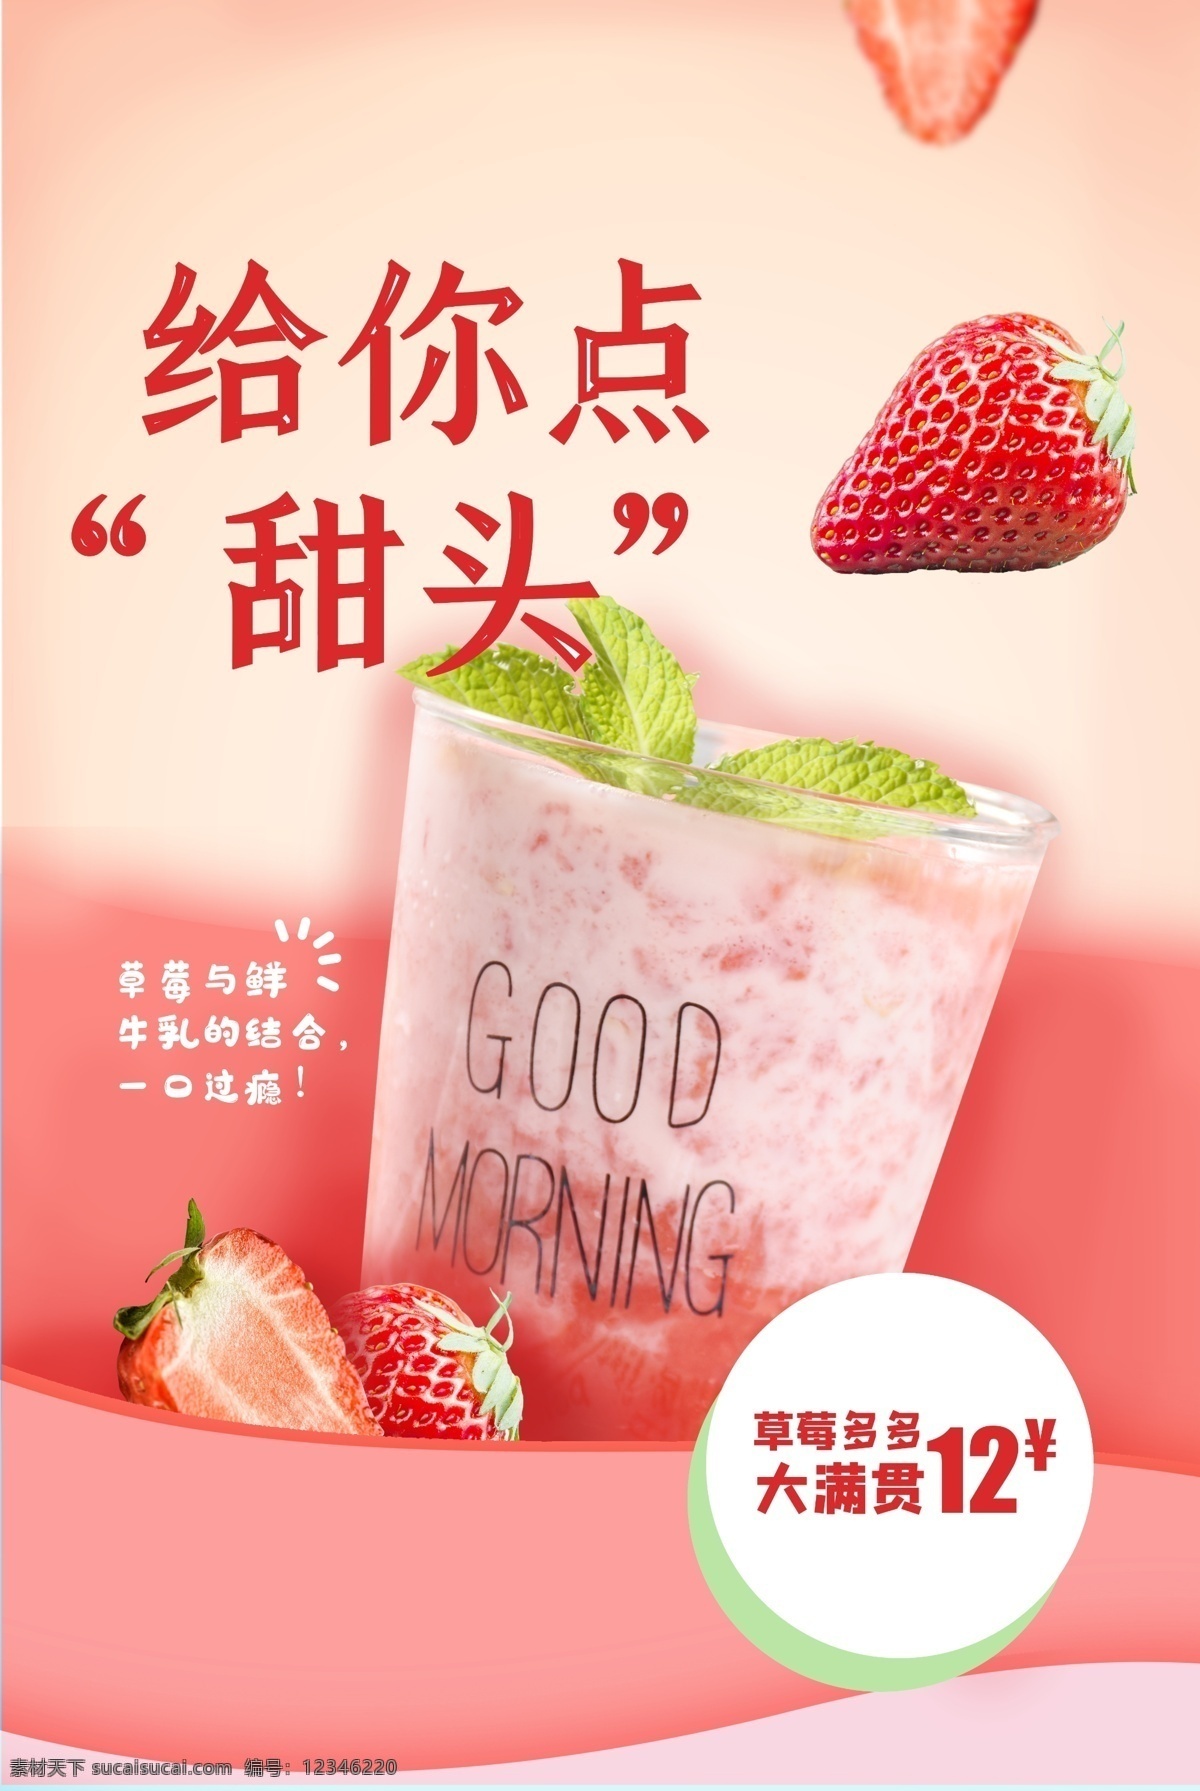 草莓 饮品 活动 促销 海报 素材图片 饮料 甜品 类